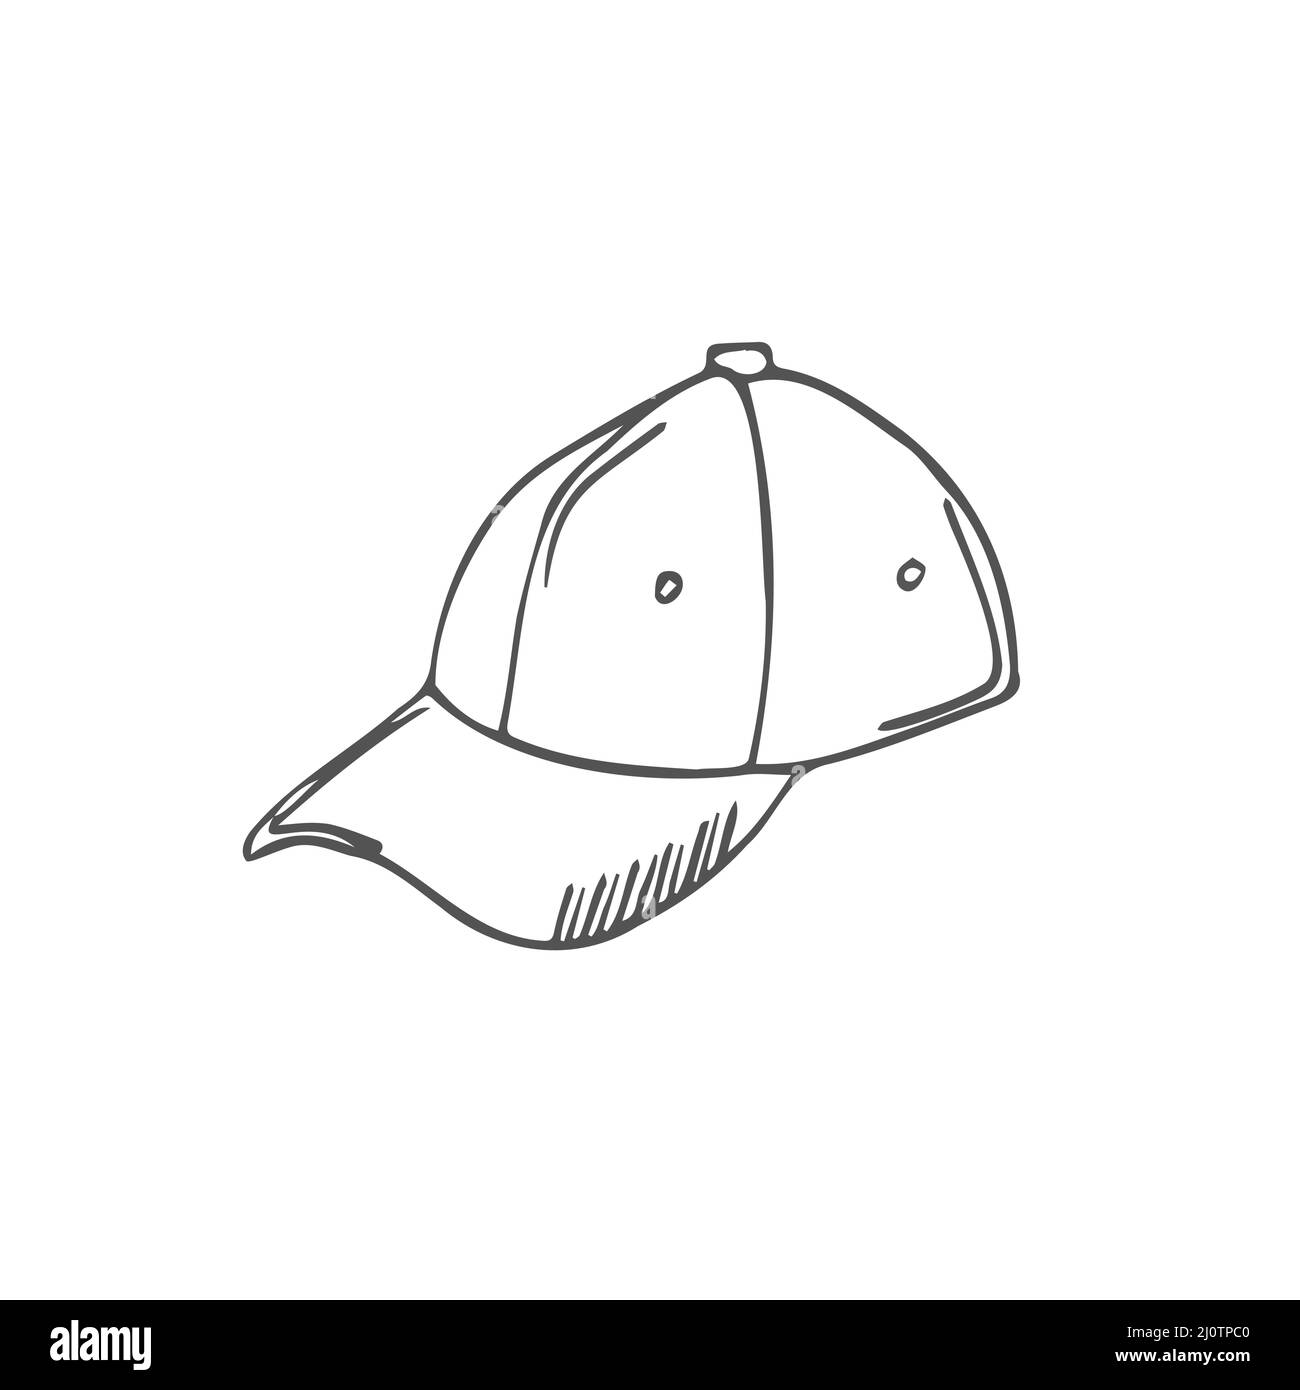 draw a cap girl : r/ArtBuddy